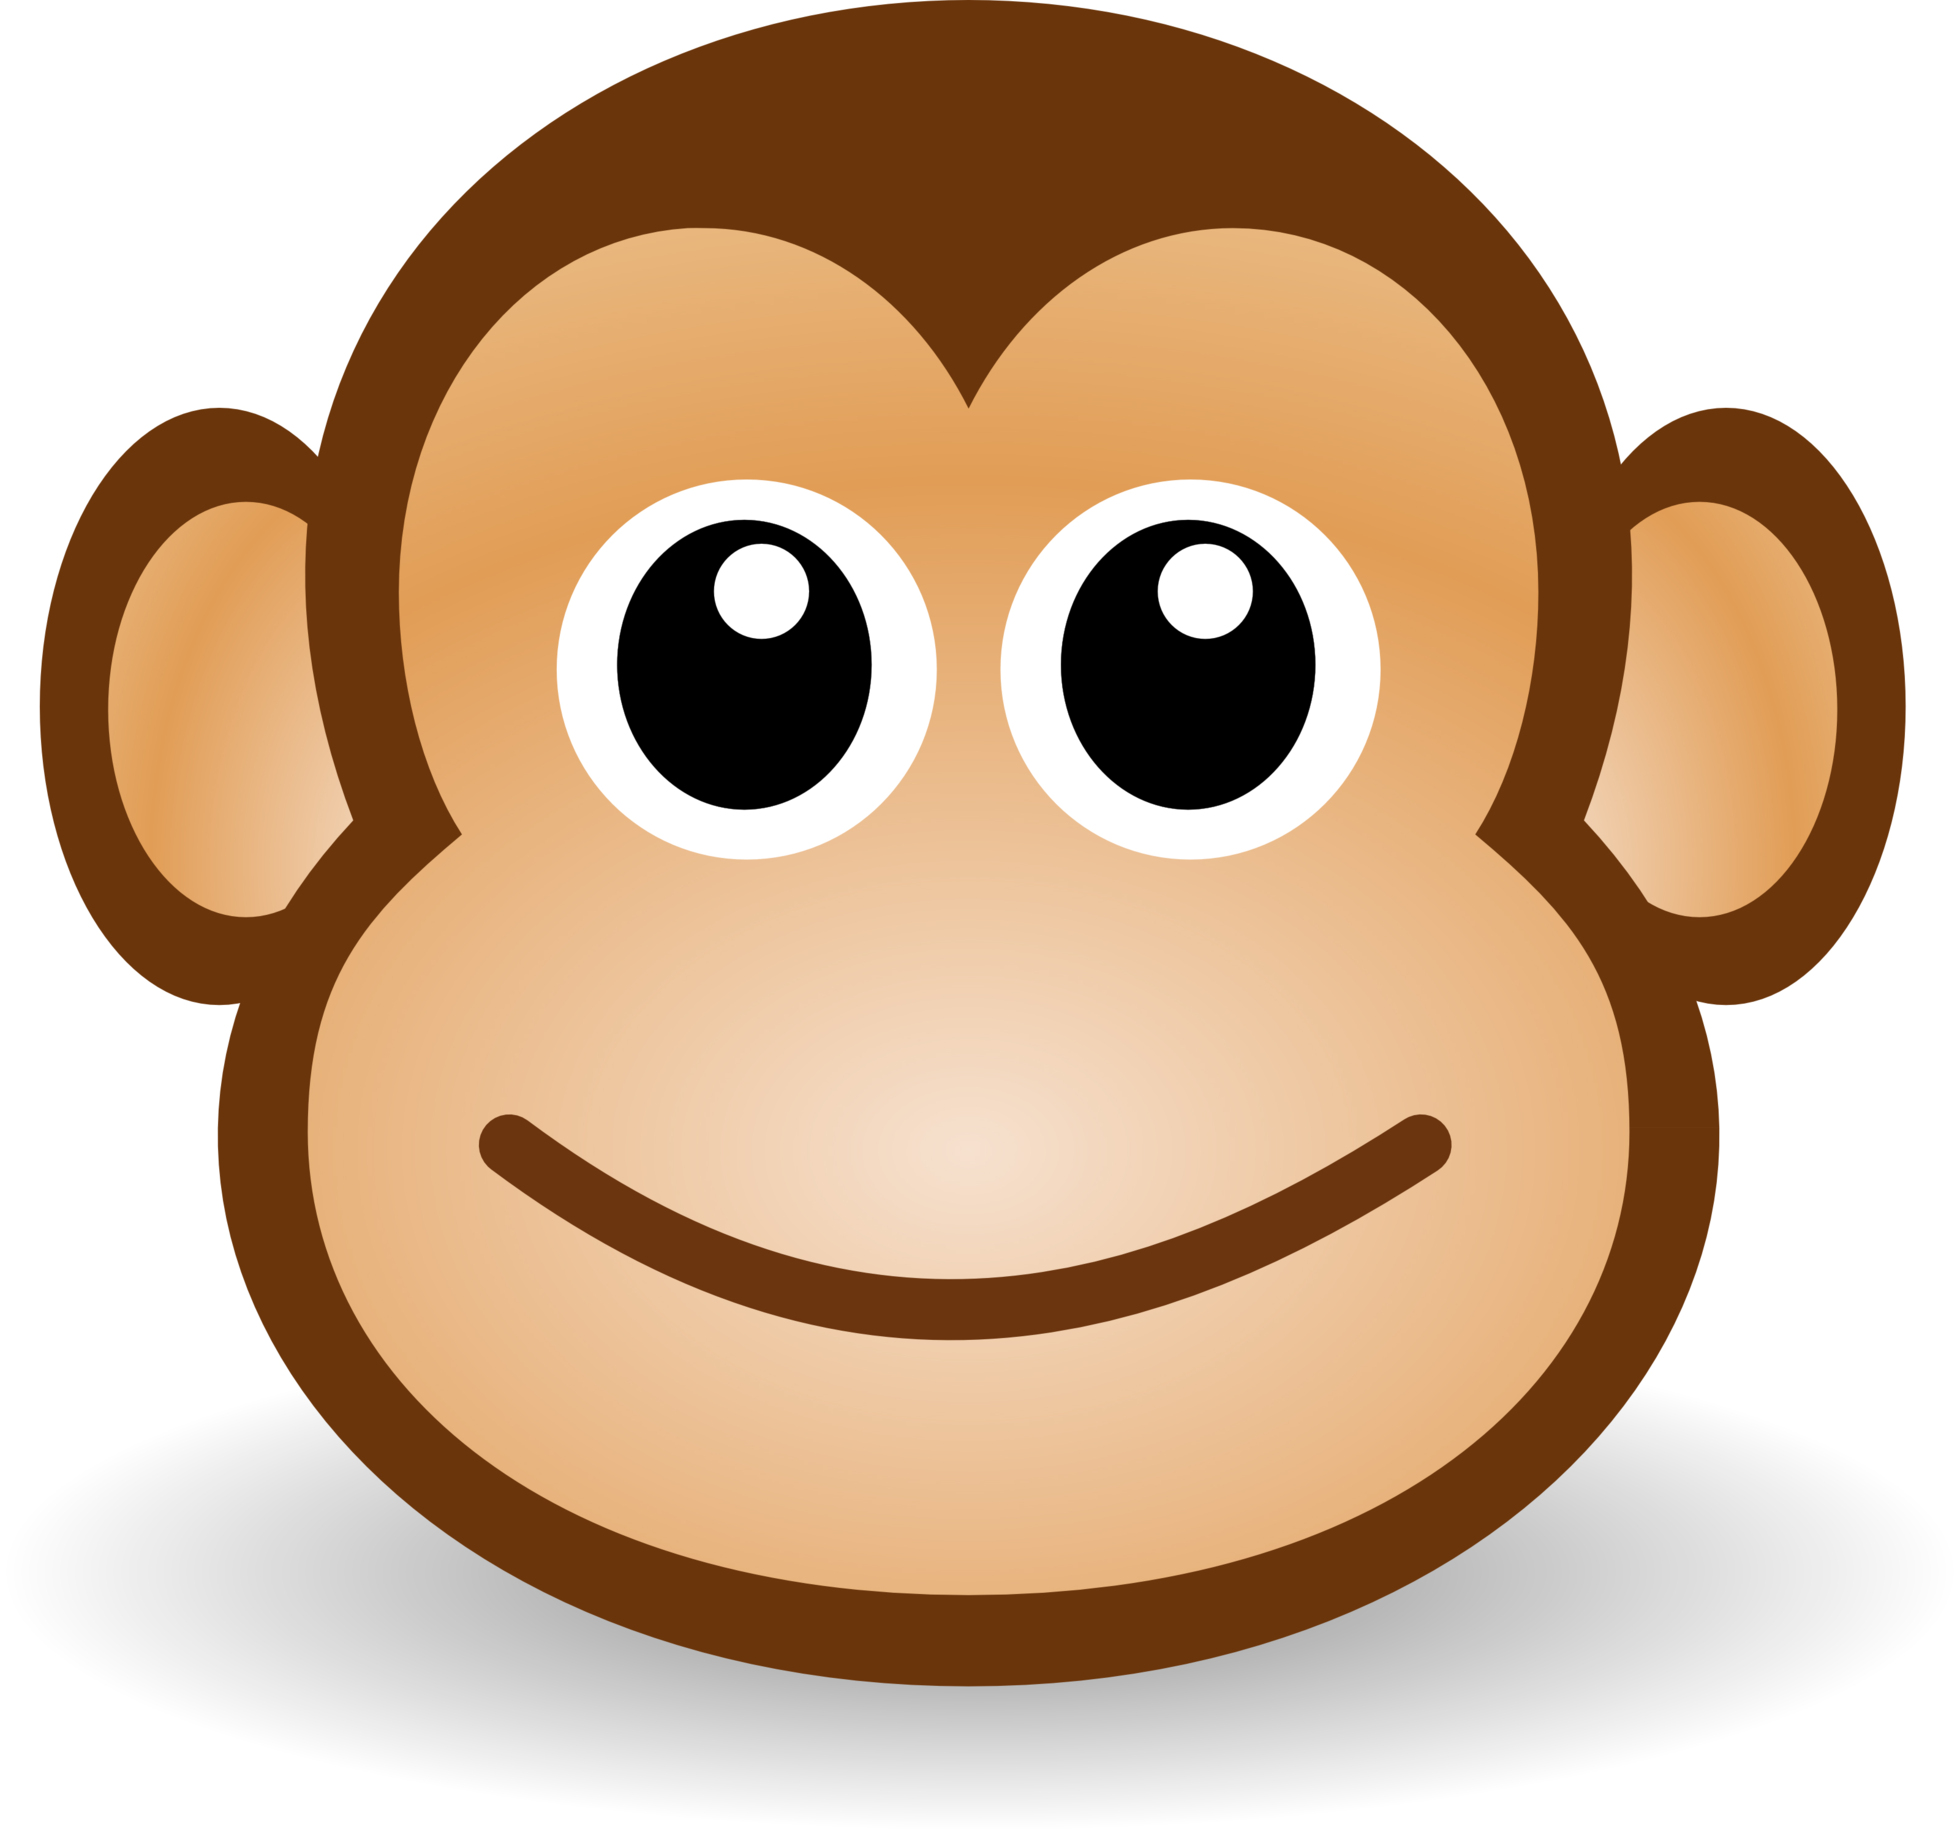 135 Monkey Cartoon | Tiny Clipart